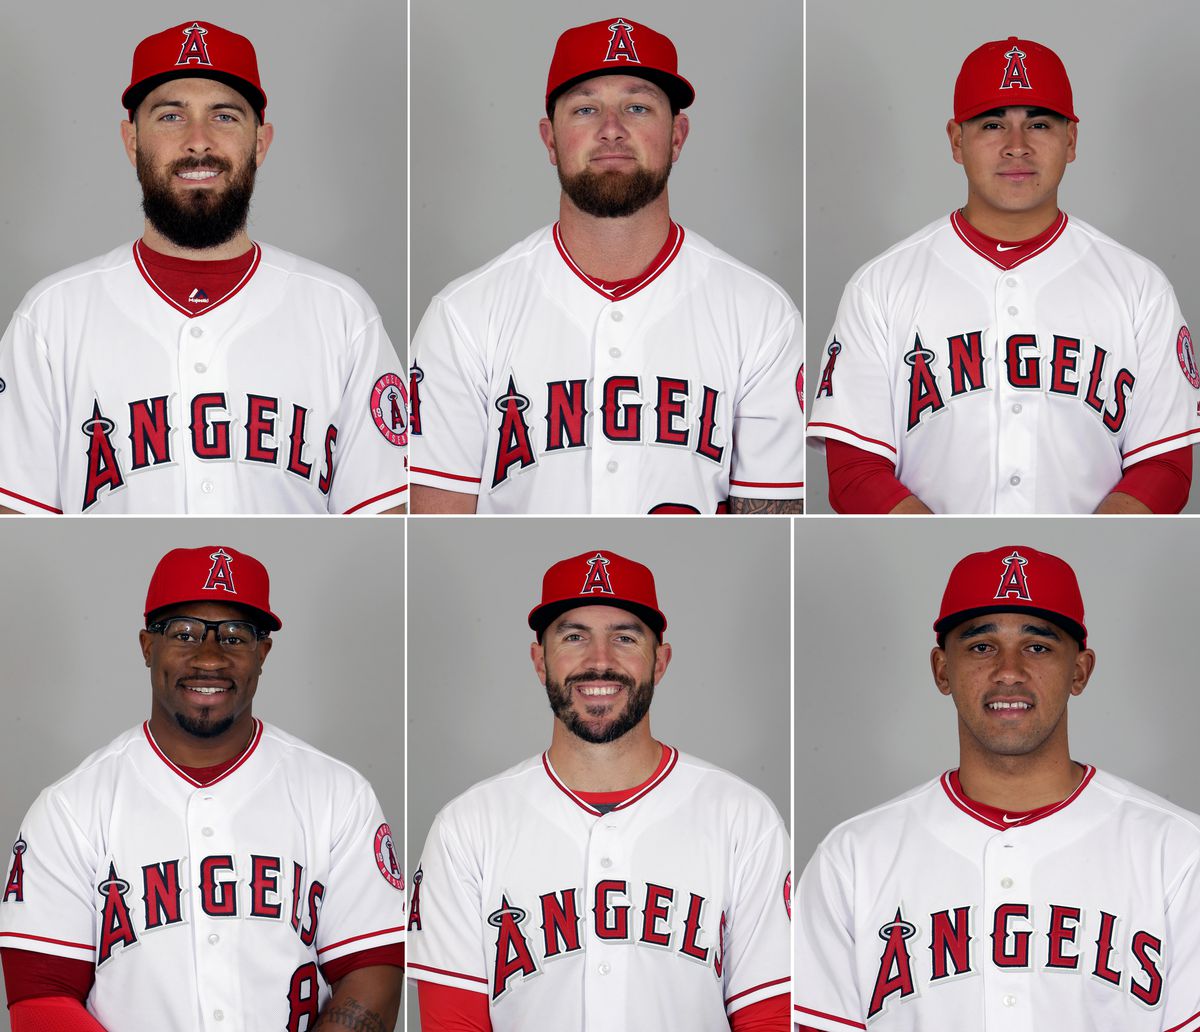 Yankees as Angels 2017